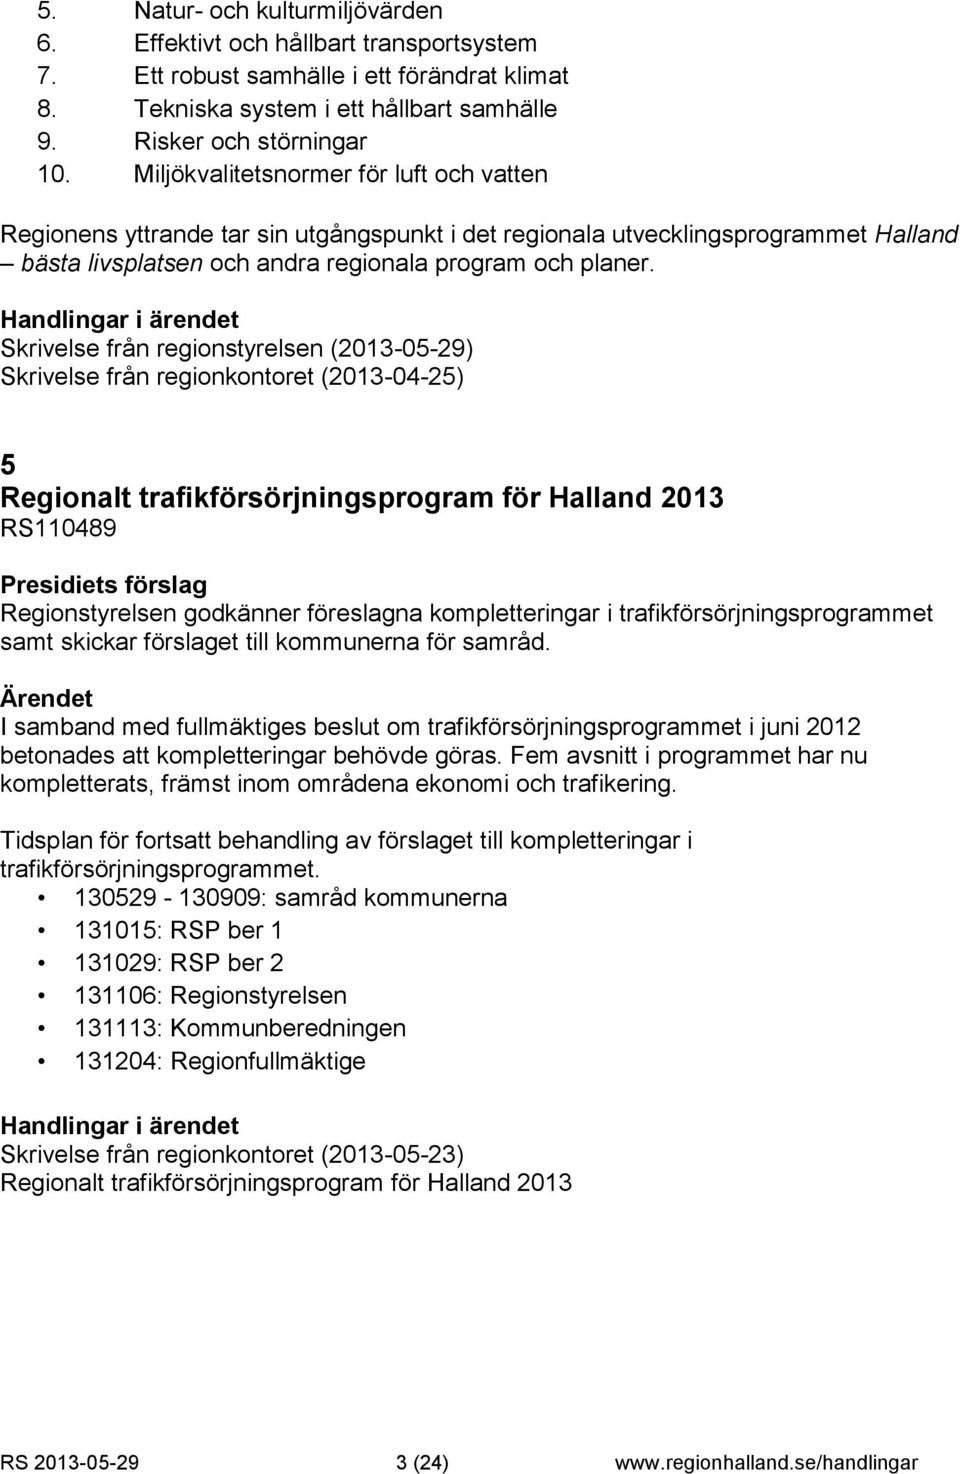 Skrivelse från regionstyrelsen (2013-05-29) Skrivelse från regionkontoret (2013-04-25) 5 Regionalt trafikförsörjningsprogram för Halland 2013 RS110489 Regionstyrelsen godkänner föreslagna